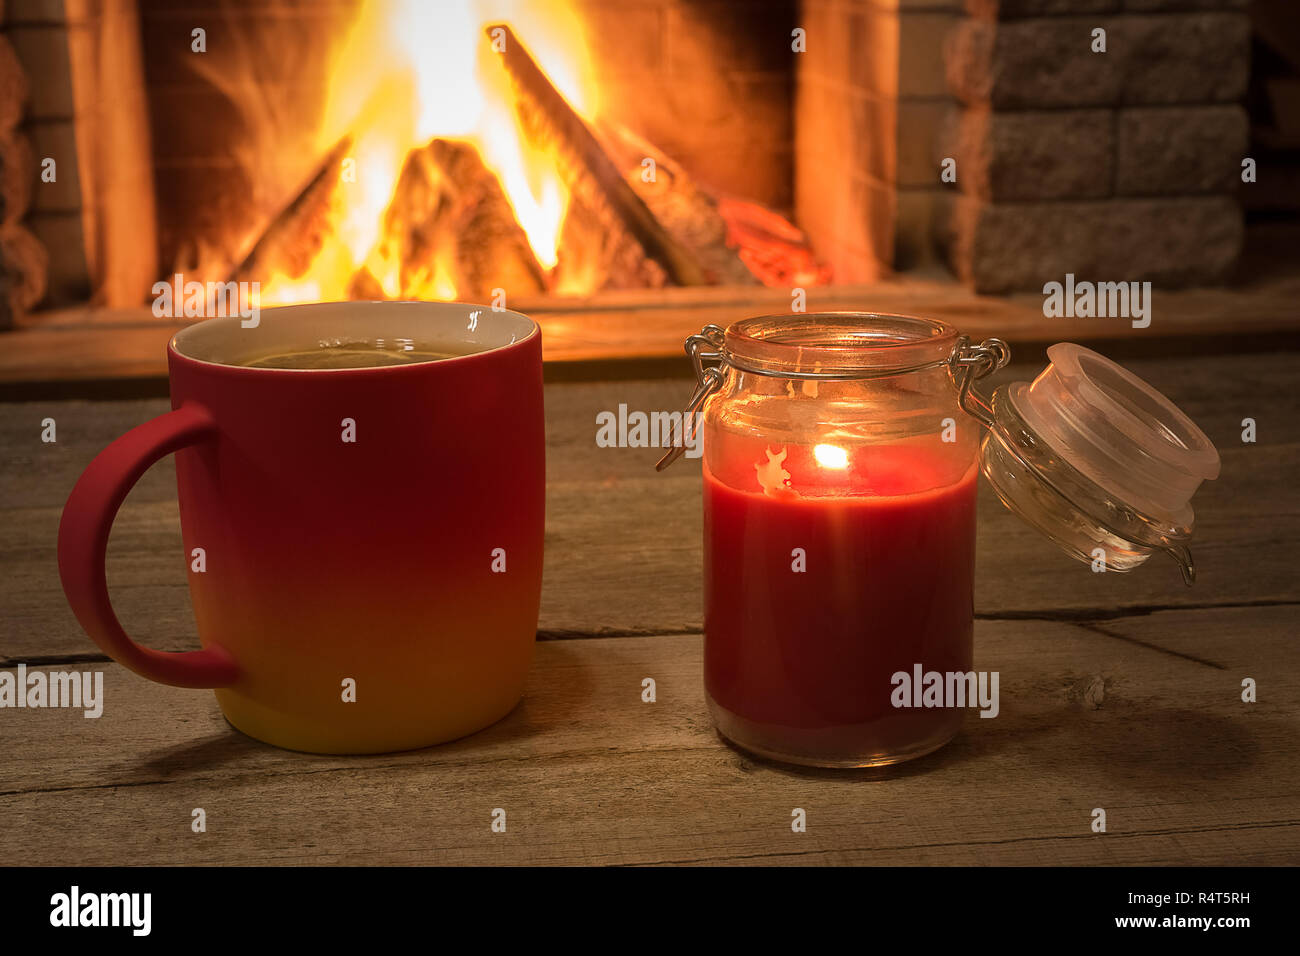 Becher mit heißem Tee und Kerzenschein in der Nähe von gemütlichem Kamin, im Landhaus, winter Urlaub, horizontal. Stockfoto